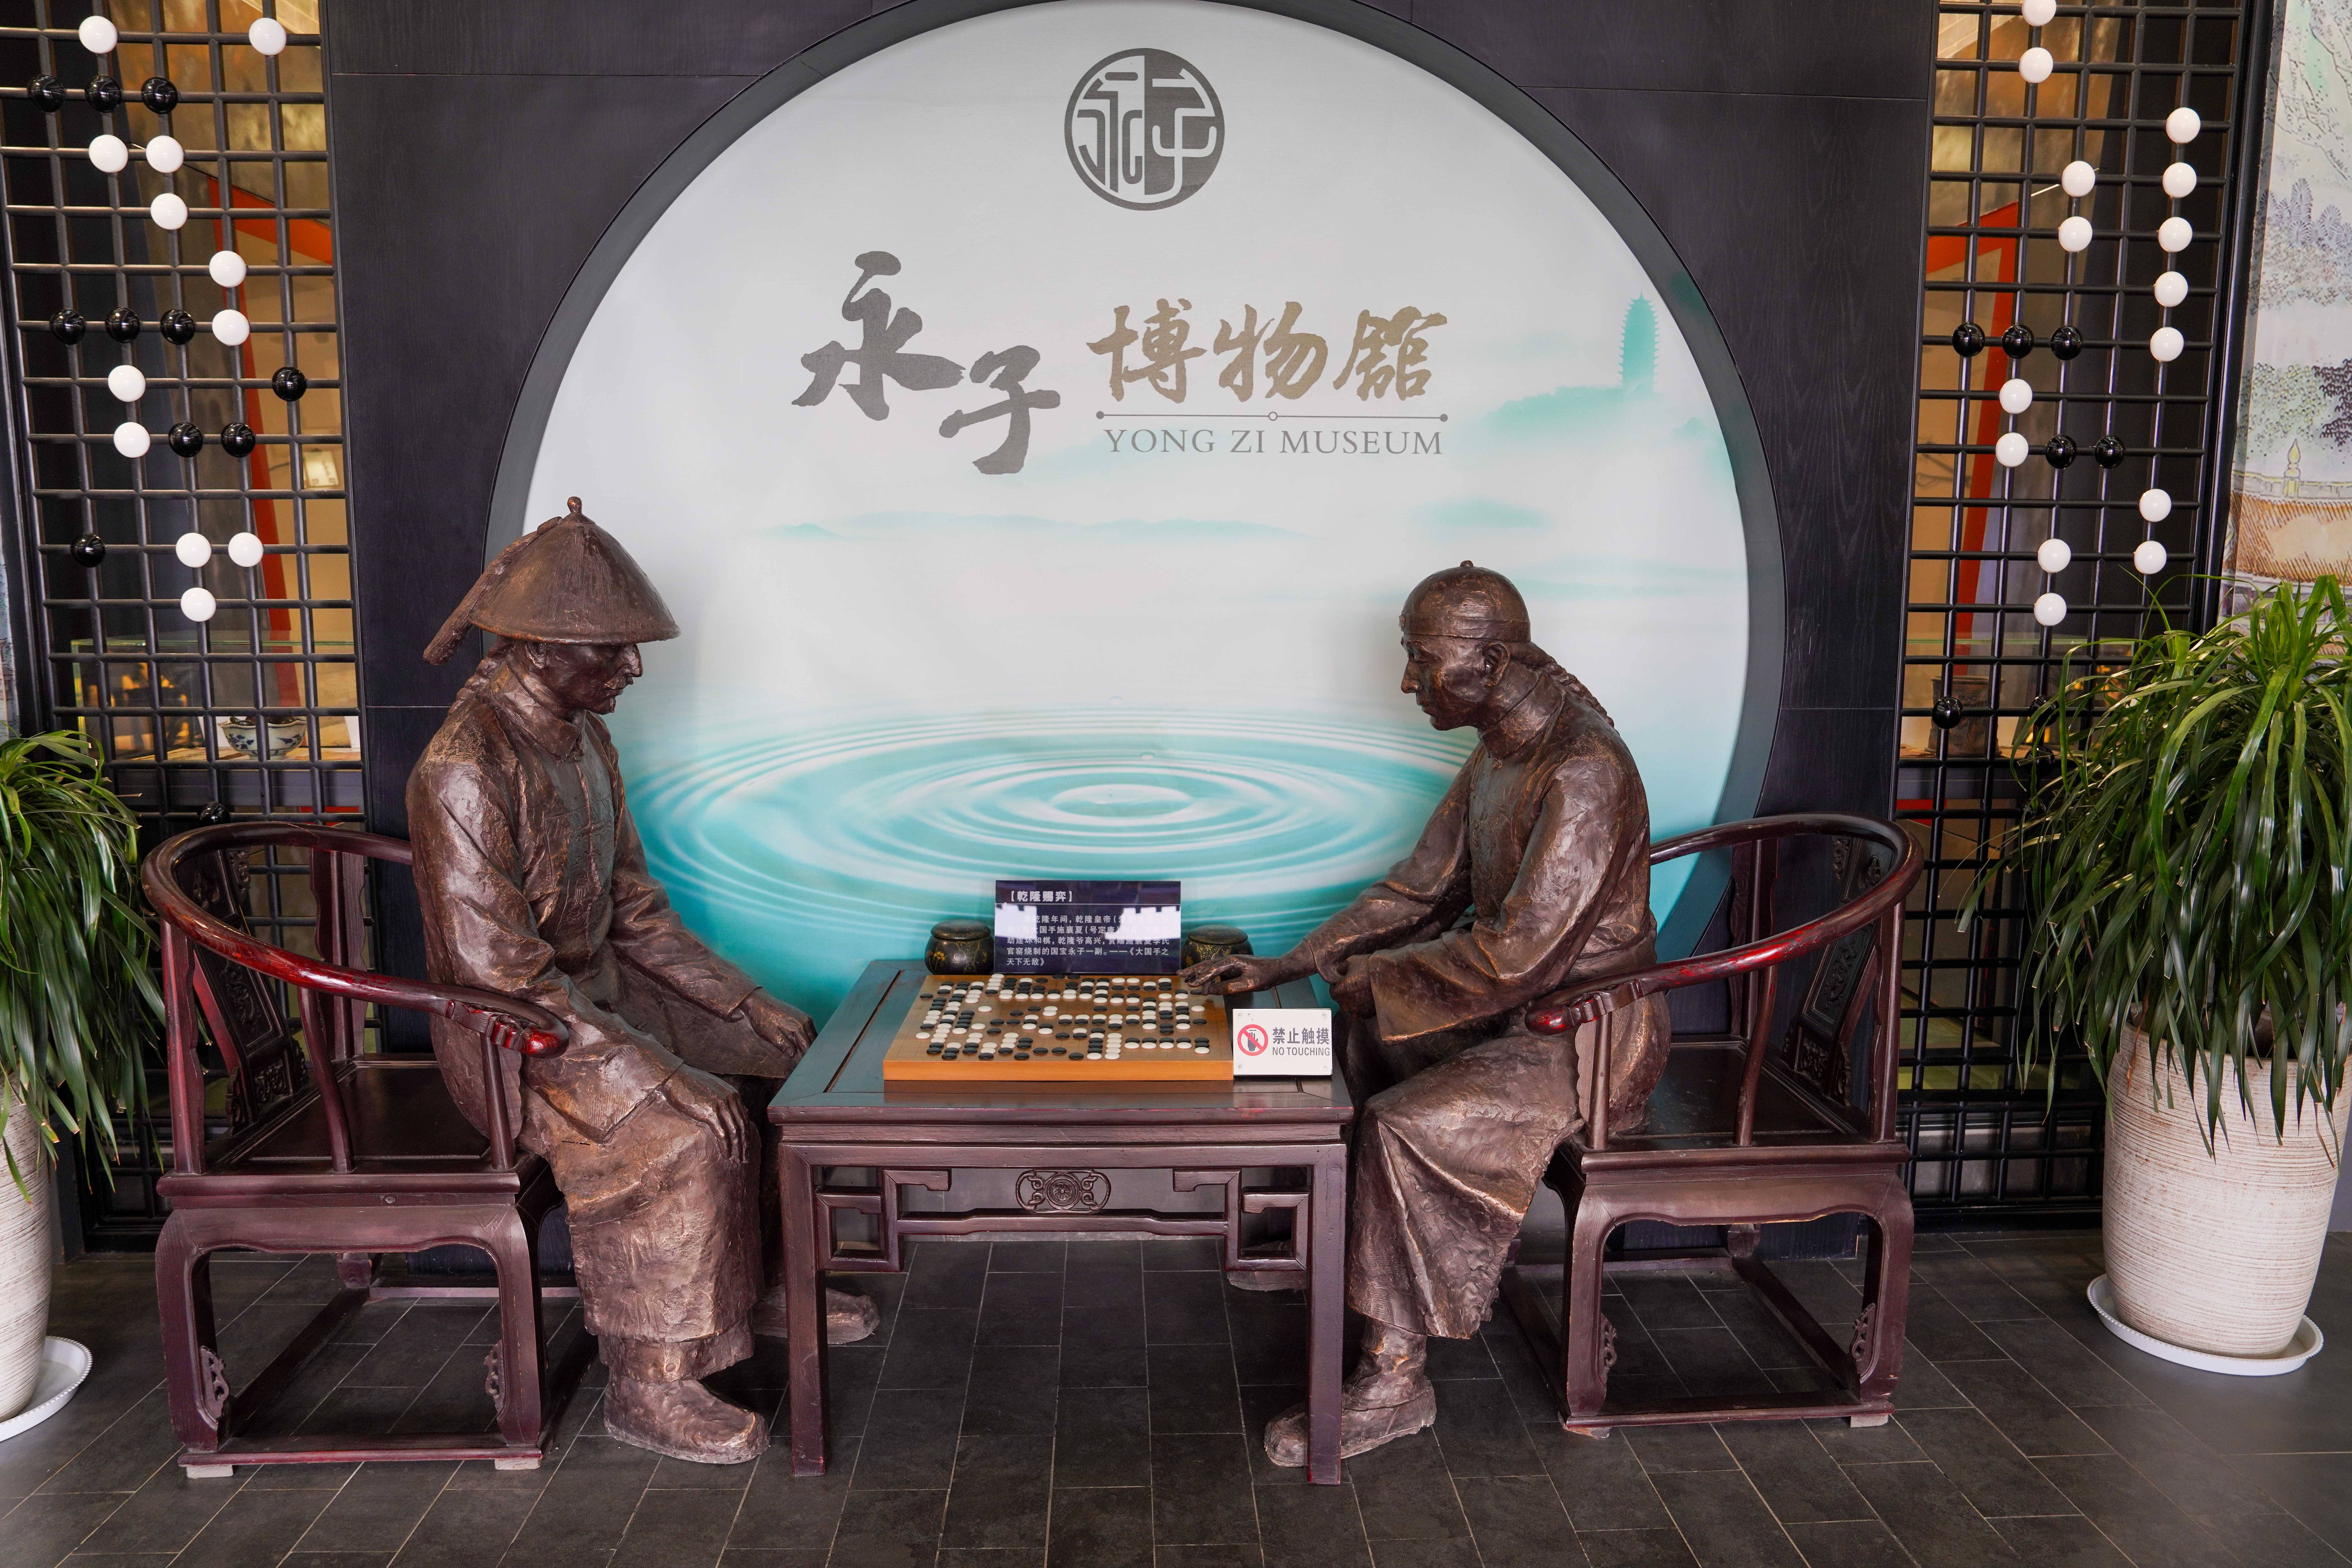 云南旅行,永子棋院,围棋文化的殿堂